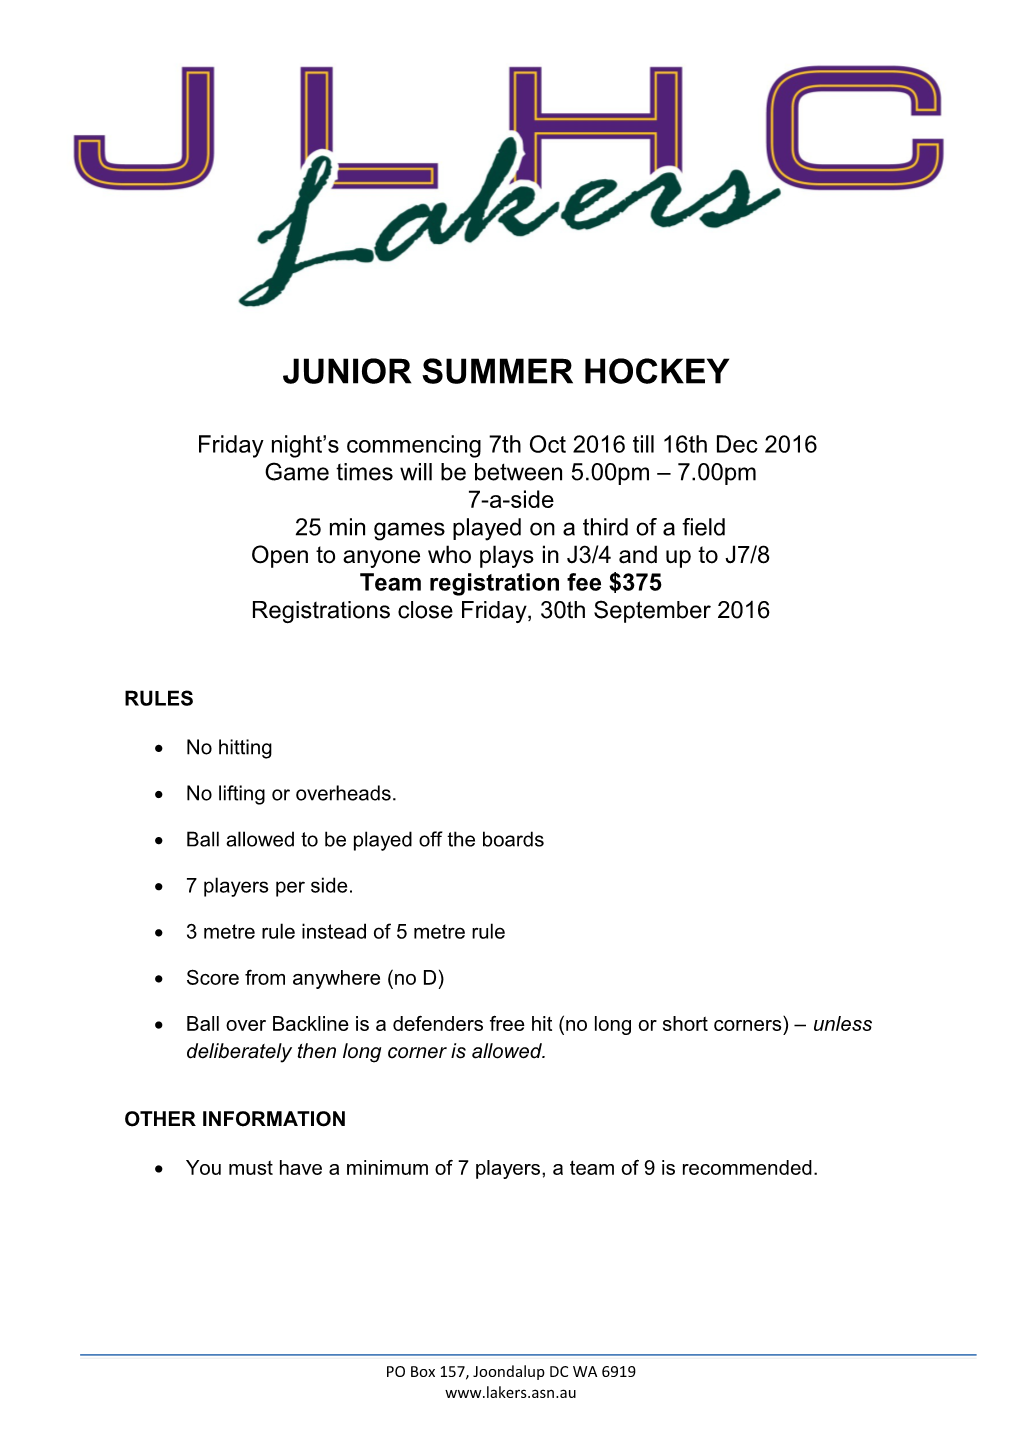 Junior Summer Hockey